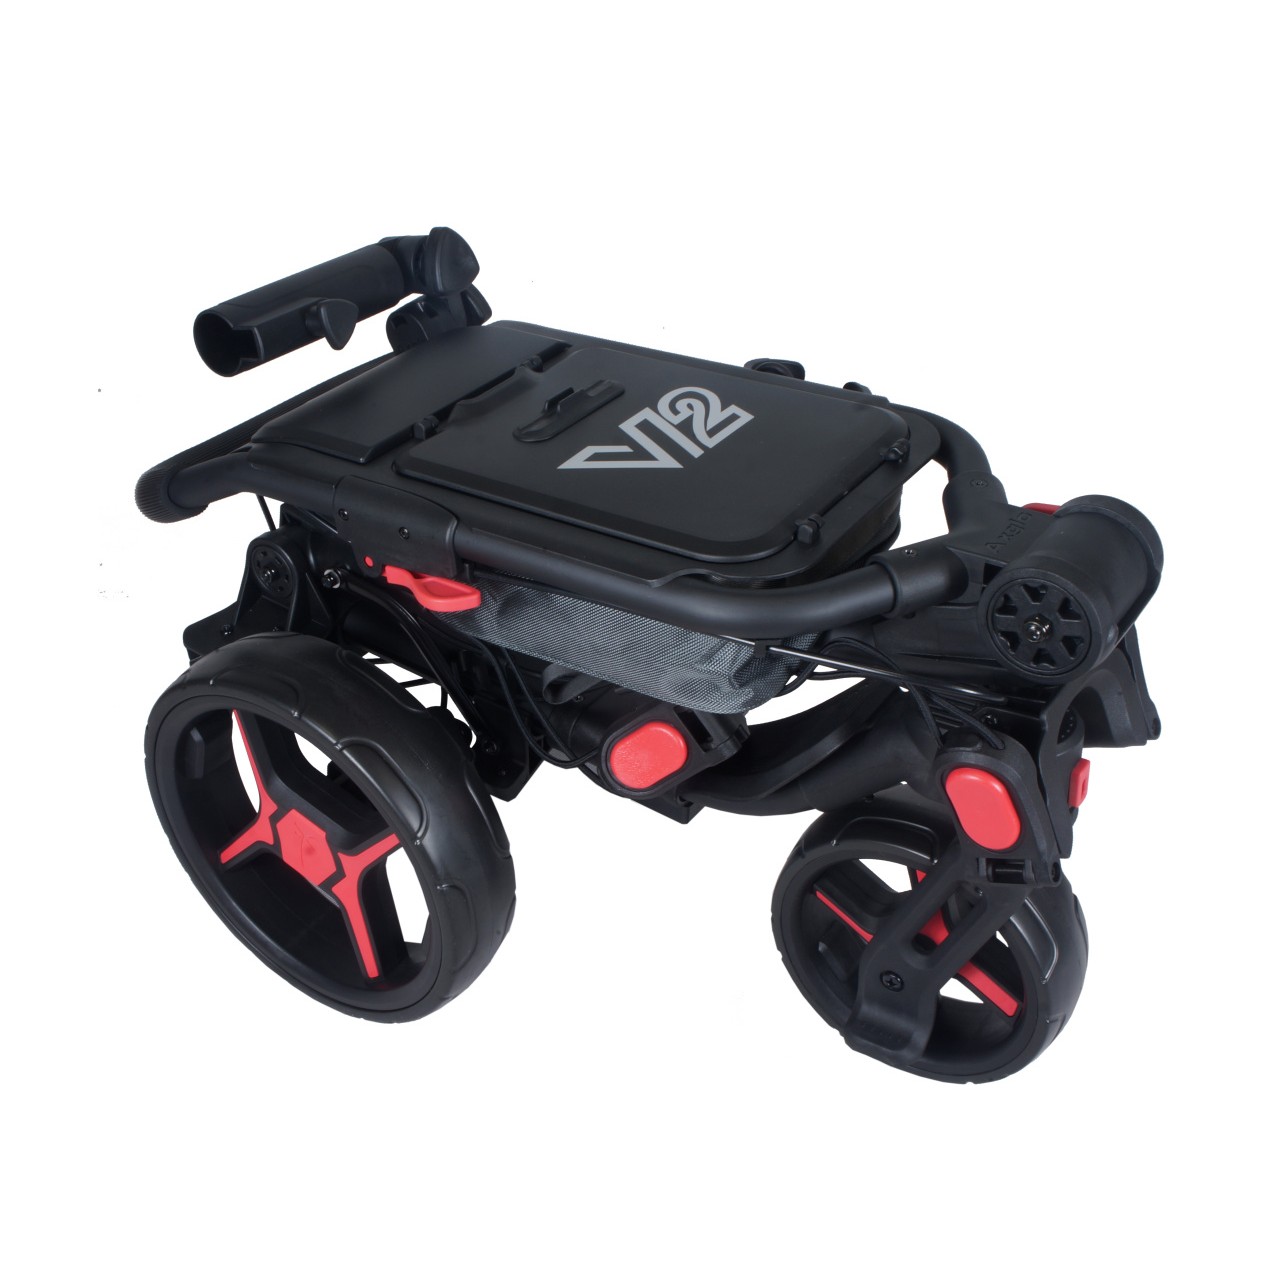 AXGLO Tri-360 V2 ruèní tøíkolový golfový vozík BLACK/RED + ZDARMA obal na kola - zvìtšit obrázek